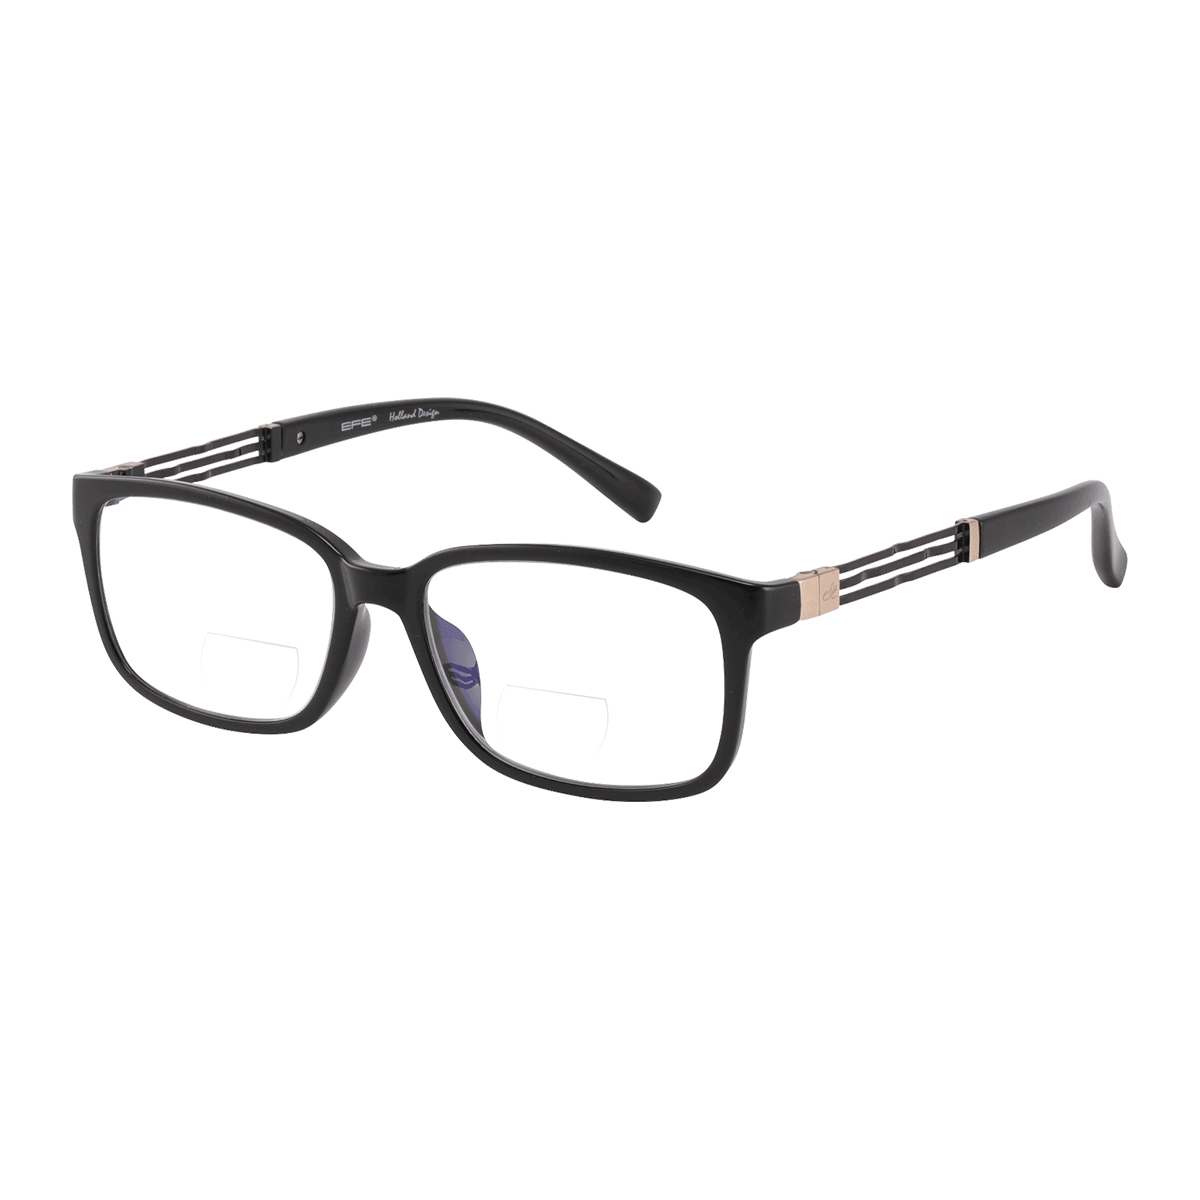 Holman - Rectangle Black Reading Glasses for Men & Women